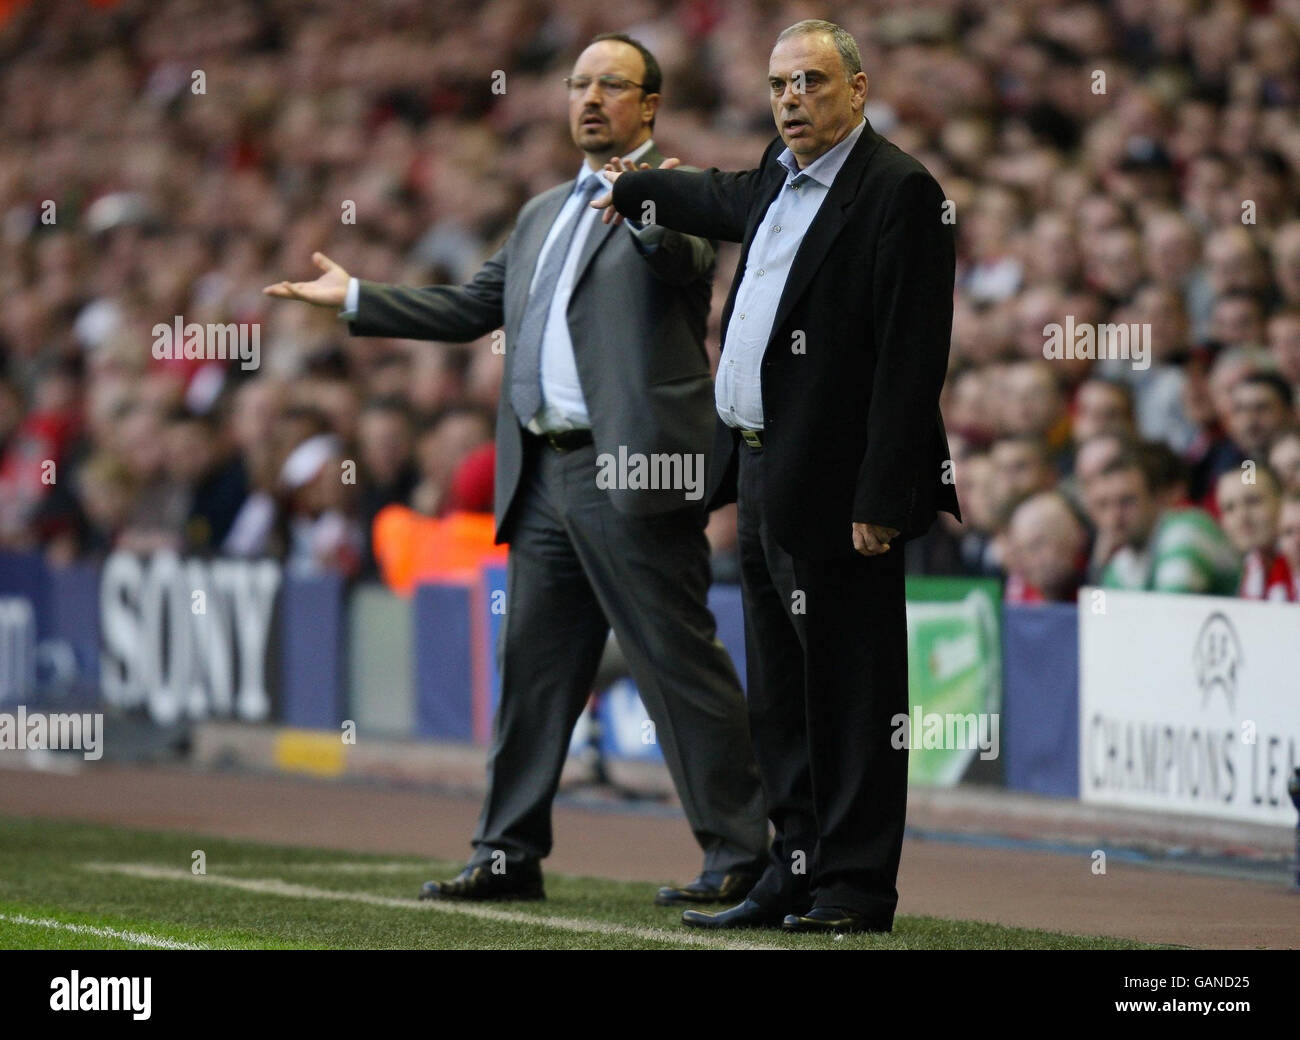 Rafael Benitez, directeur de Liverpool, et Avram Grant, directeur de Chelsea, lors du match de demi-finale de la première jambe de l'UEFA Champions League à Anfield, Liverpool. Banque D'Images